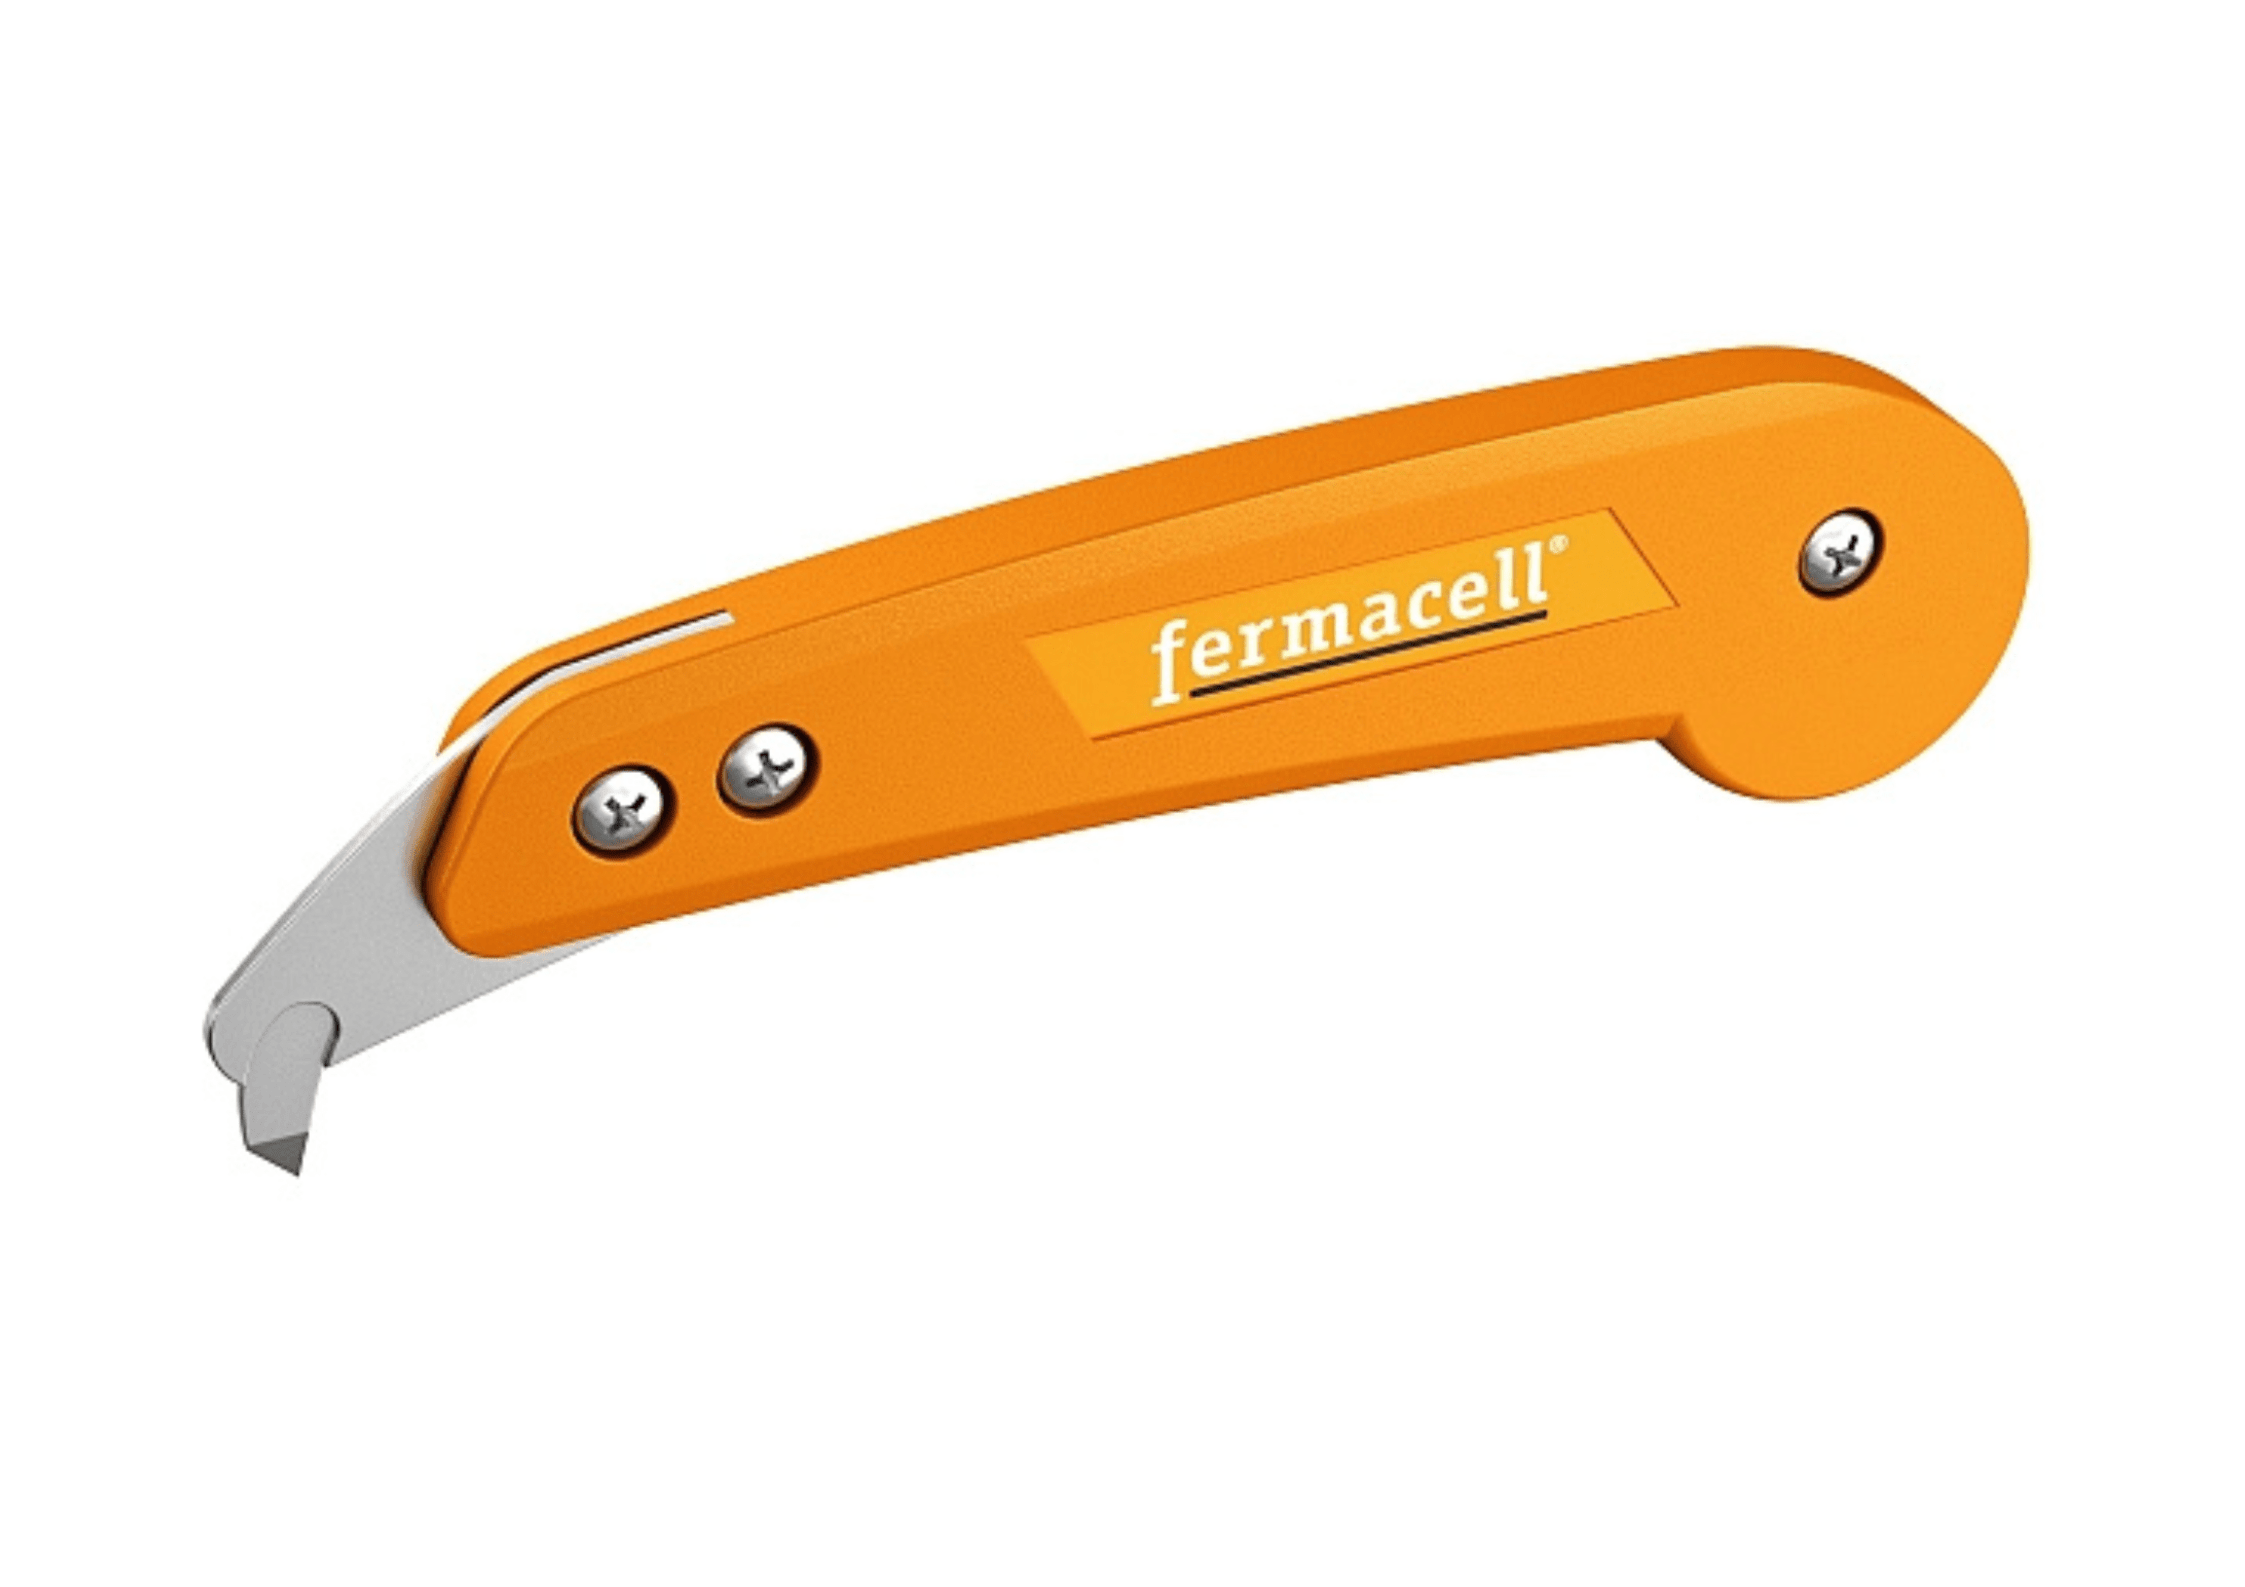 Fermacell Tool Fermacell®  Board Knife 4007548001649 IUK01549 fermacell®  Board Knife | insulationuk.co.uk